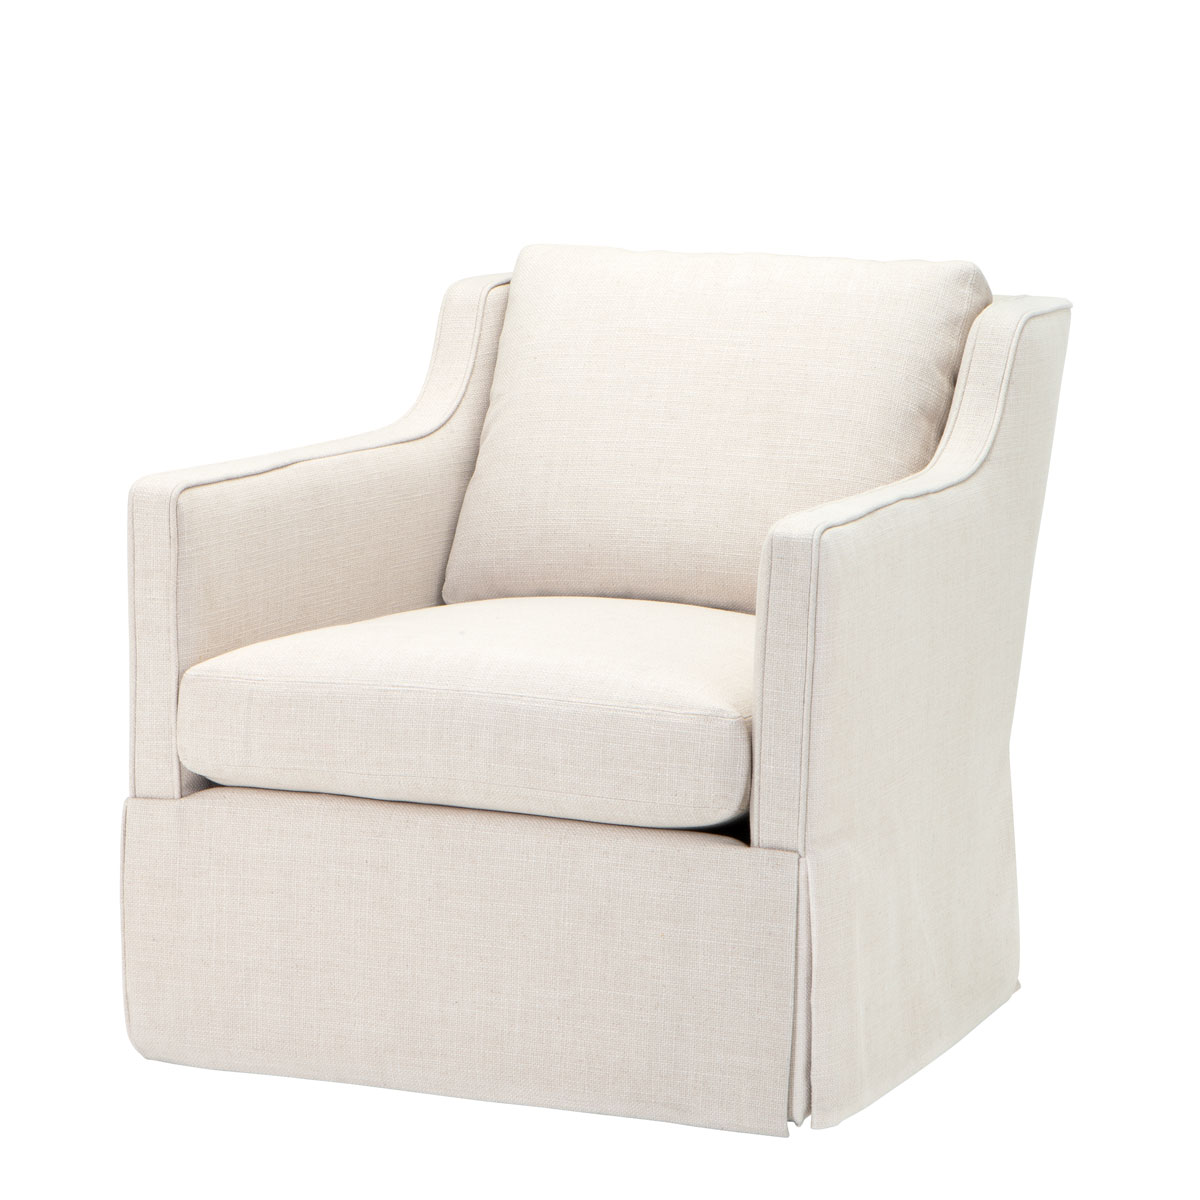 Chair-Cliveden-1